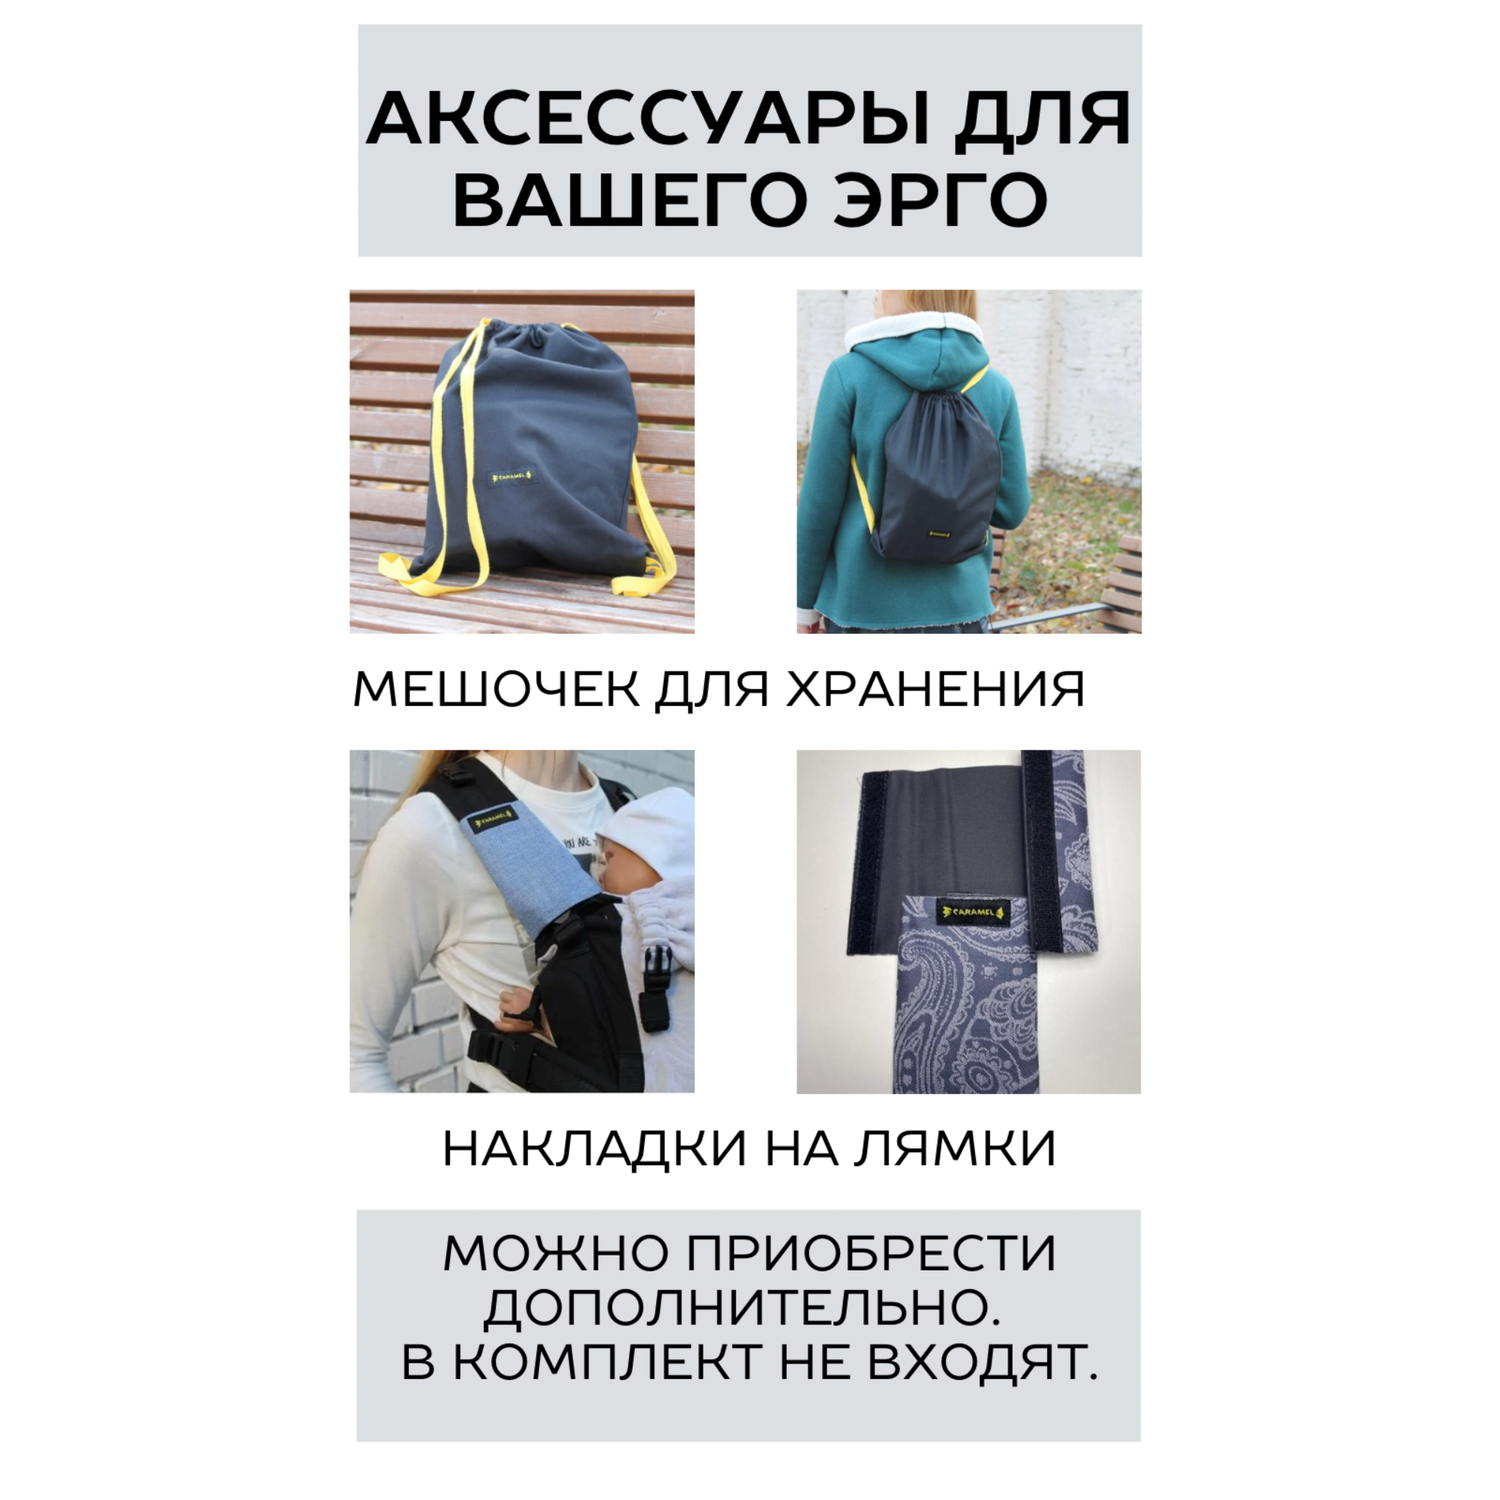 Слинг-рюкзак CaramelSling эргорюкзак Multisize 0+ бежевый/серый - фото 10